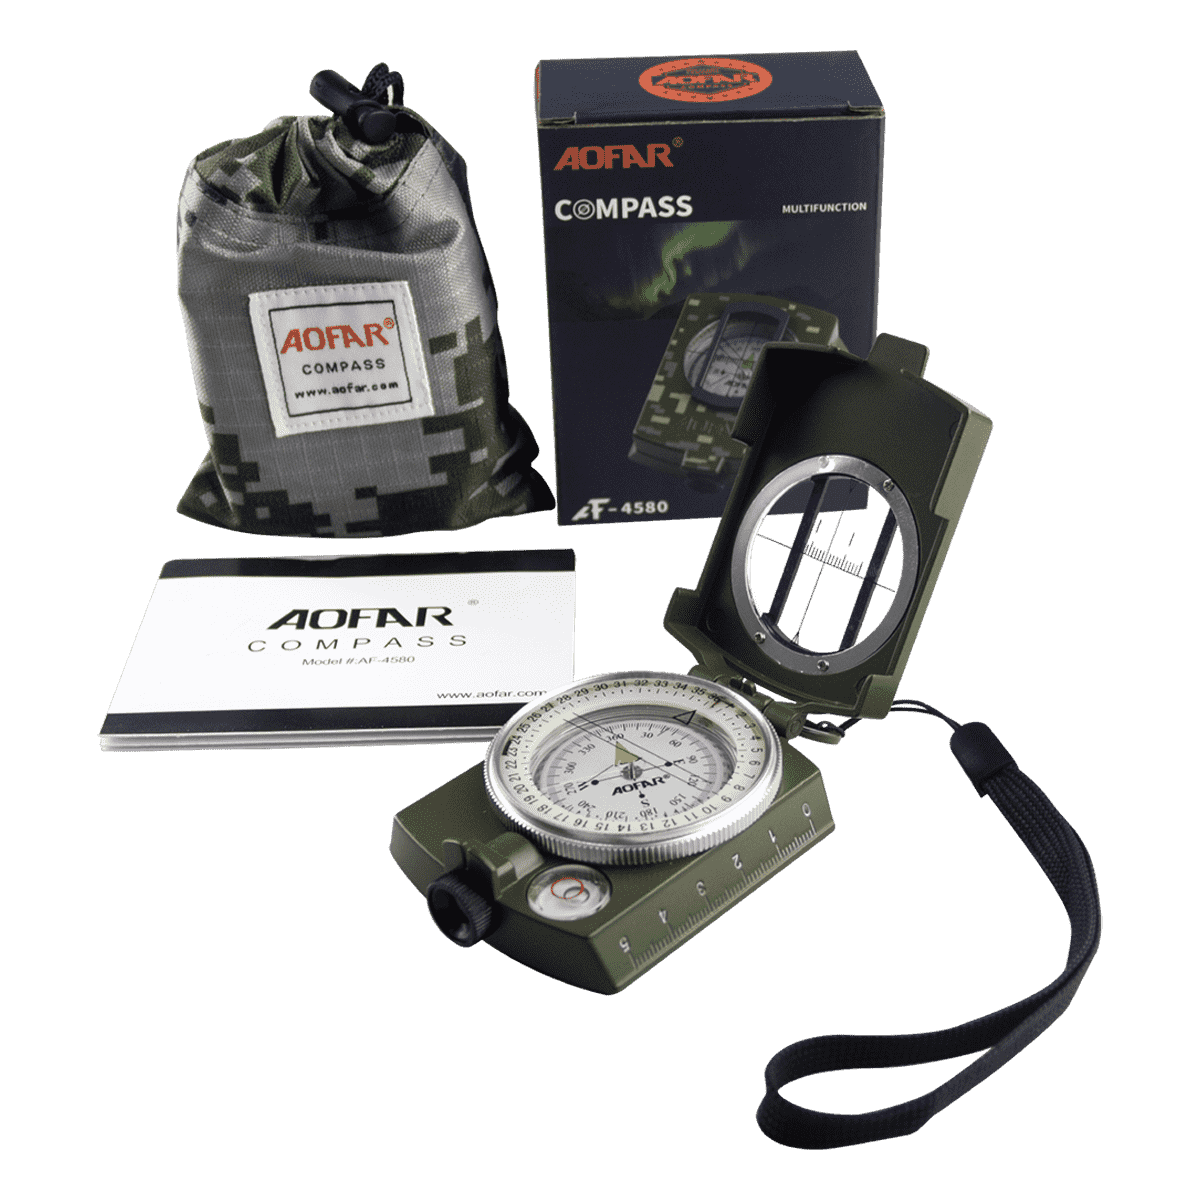 AF-4580 Compass